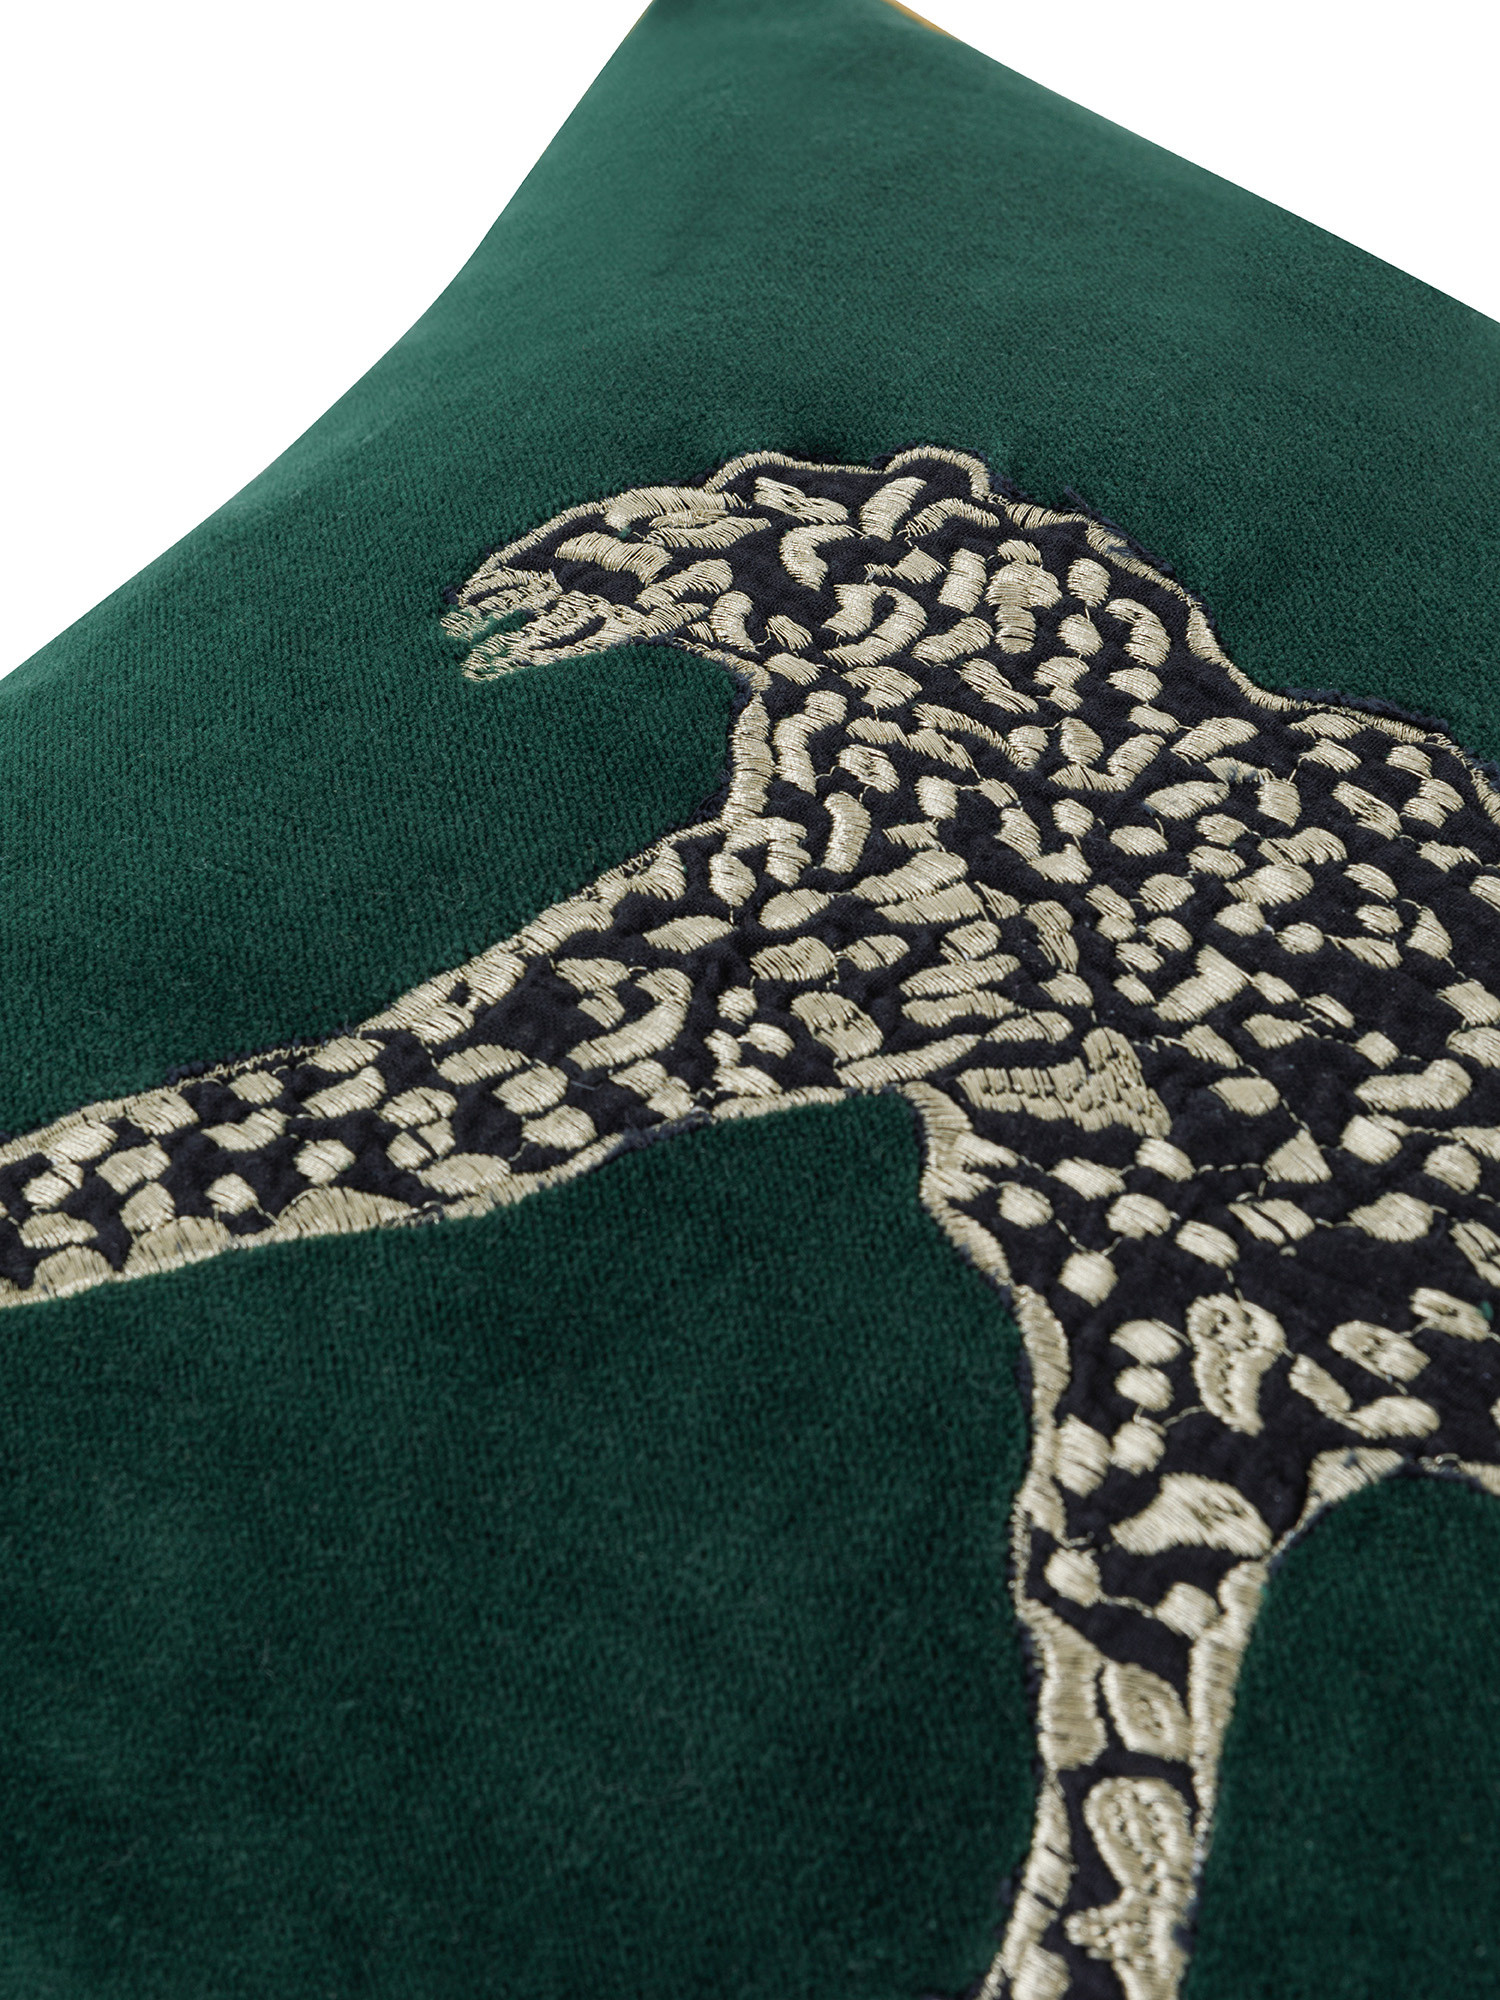 Cuscino in velluto ricamo leopardo 35x50 cm, Verde, large image number 2